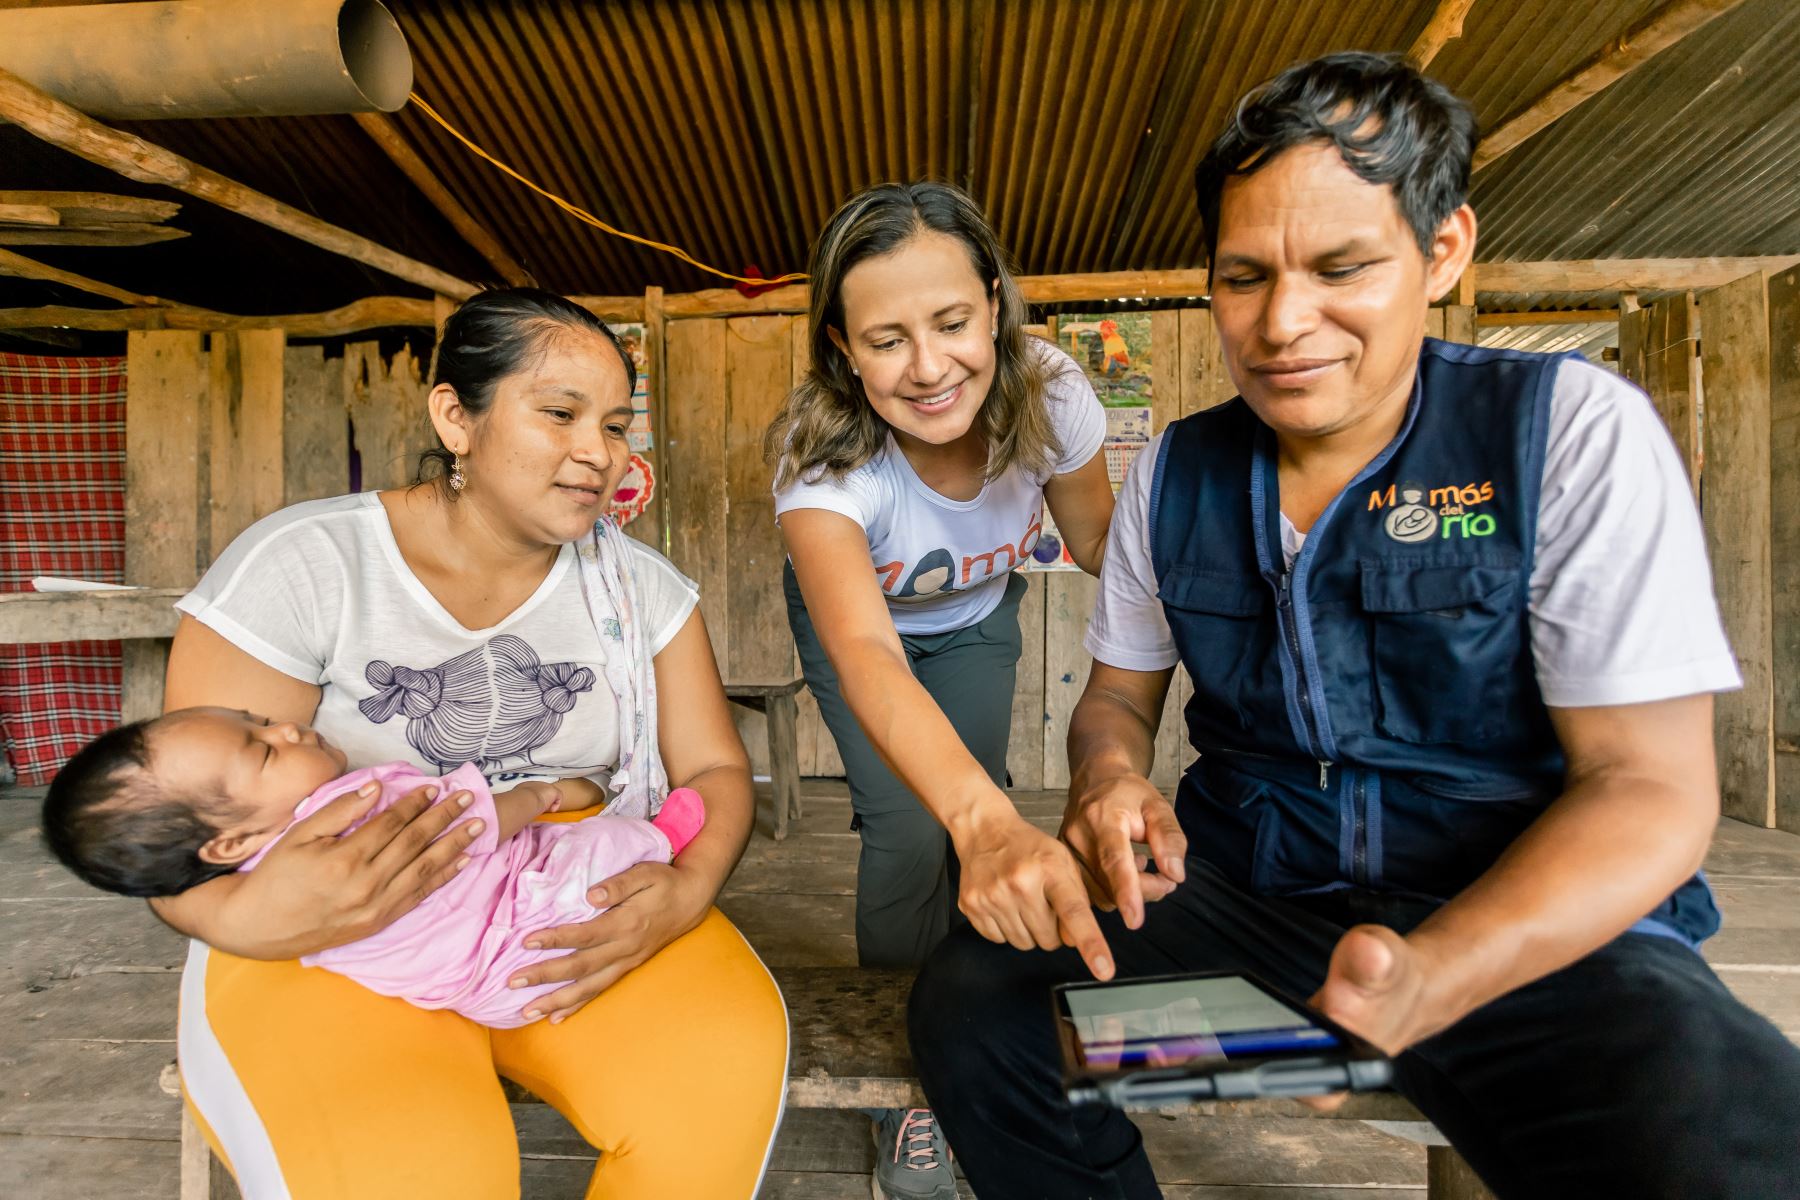 Magaly Blas es una guardiana de la salud, dirige el programa Mamás del Río de la Universidad Cayetano Heredia (UPCH), gracias al cual ha salvado la vida de gestantes de la Amazonía y mejorado el crecimiento de los recién nacidos. Estas familias pertenecen a las comunidades asentadas a lo largo del río Marañón, en Loreto.
Foto: ANDINA/ Mamás del Río